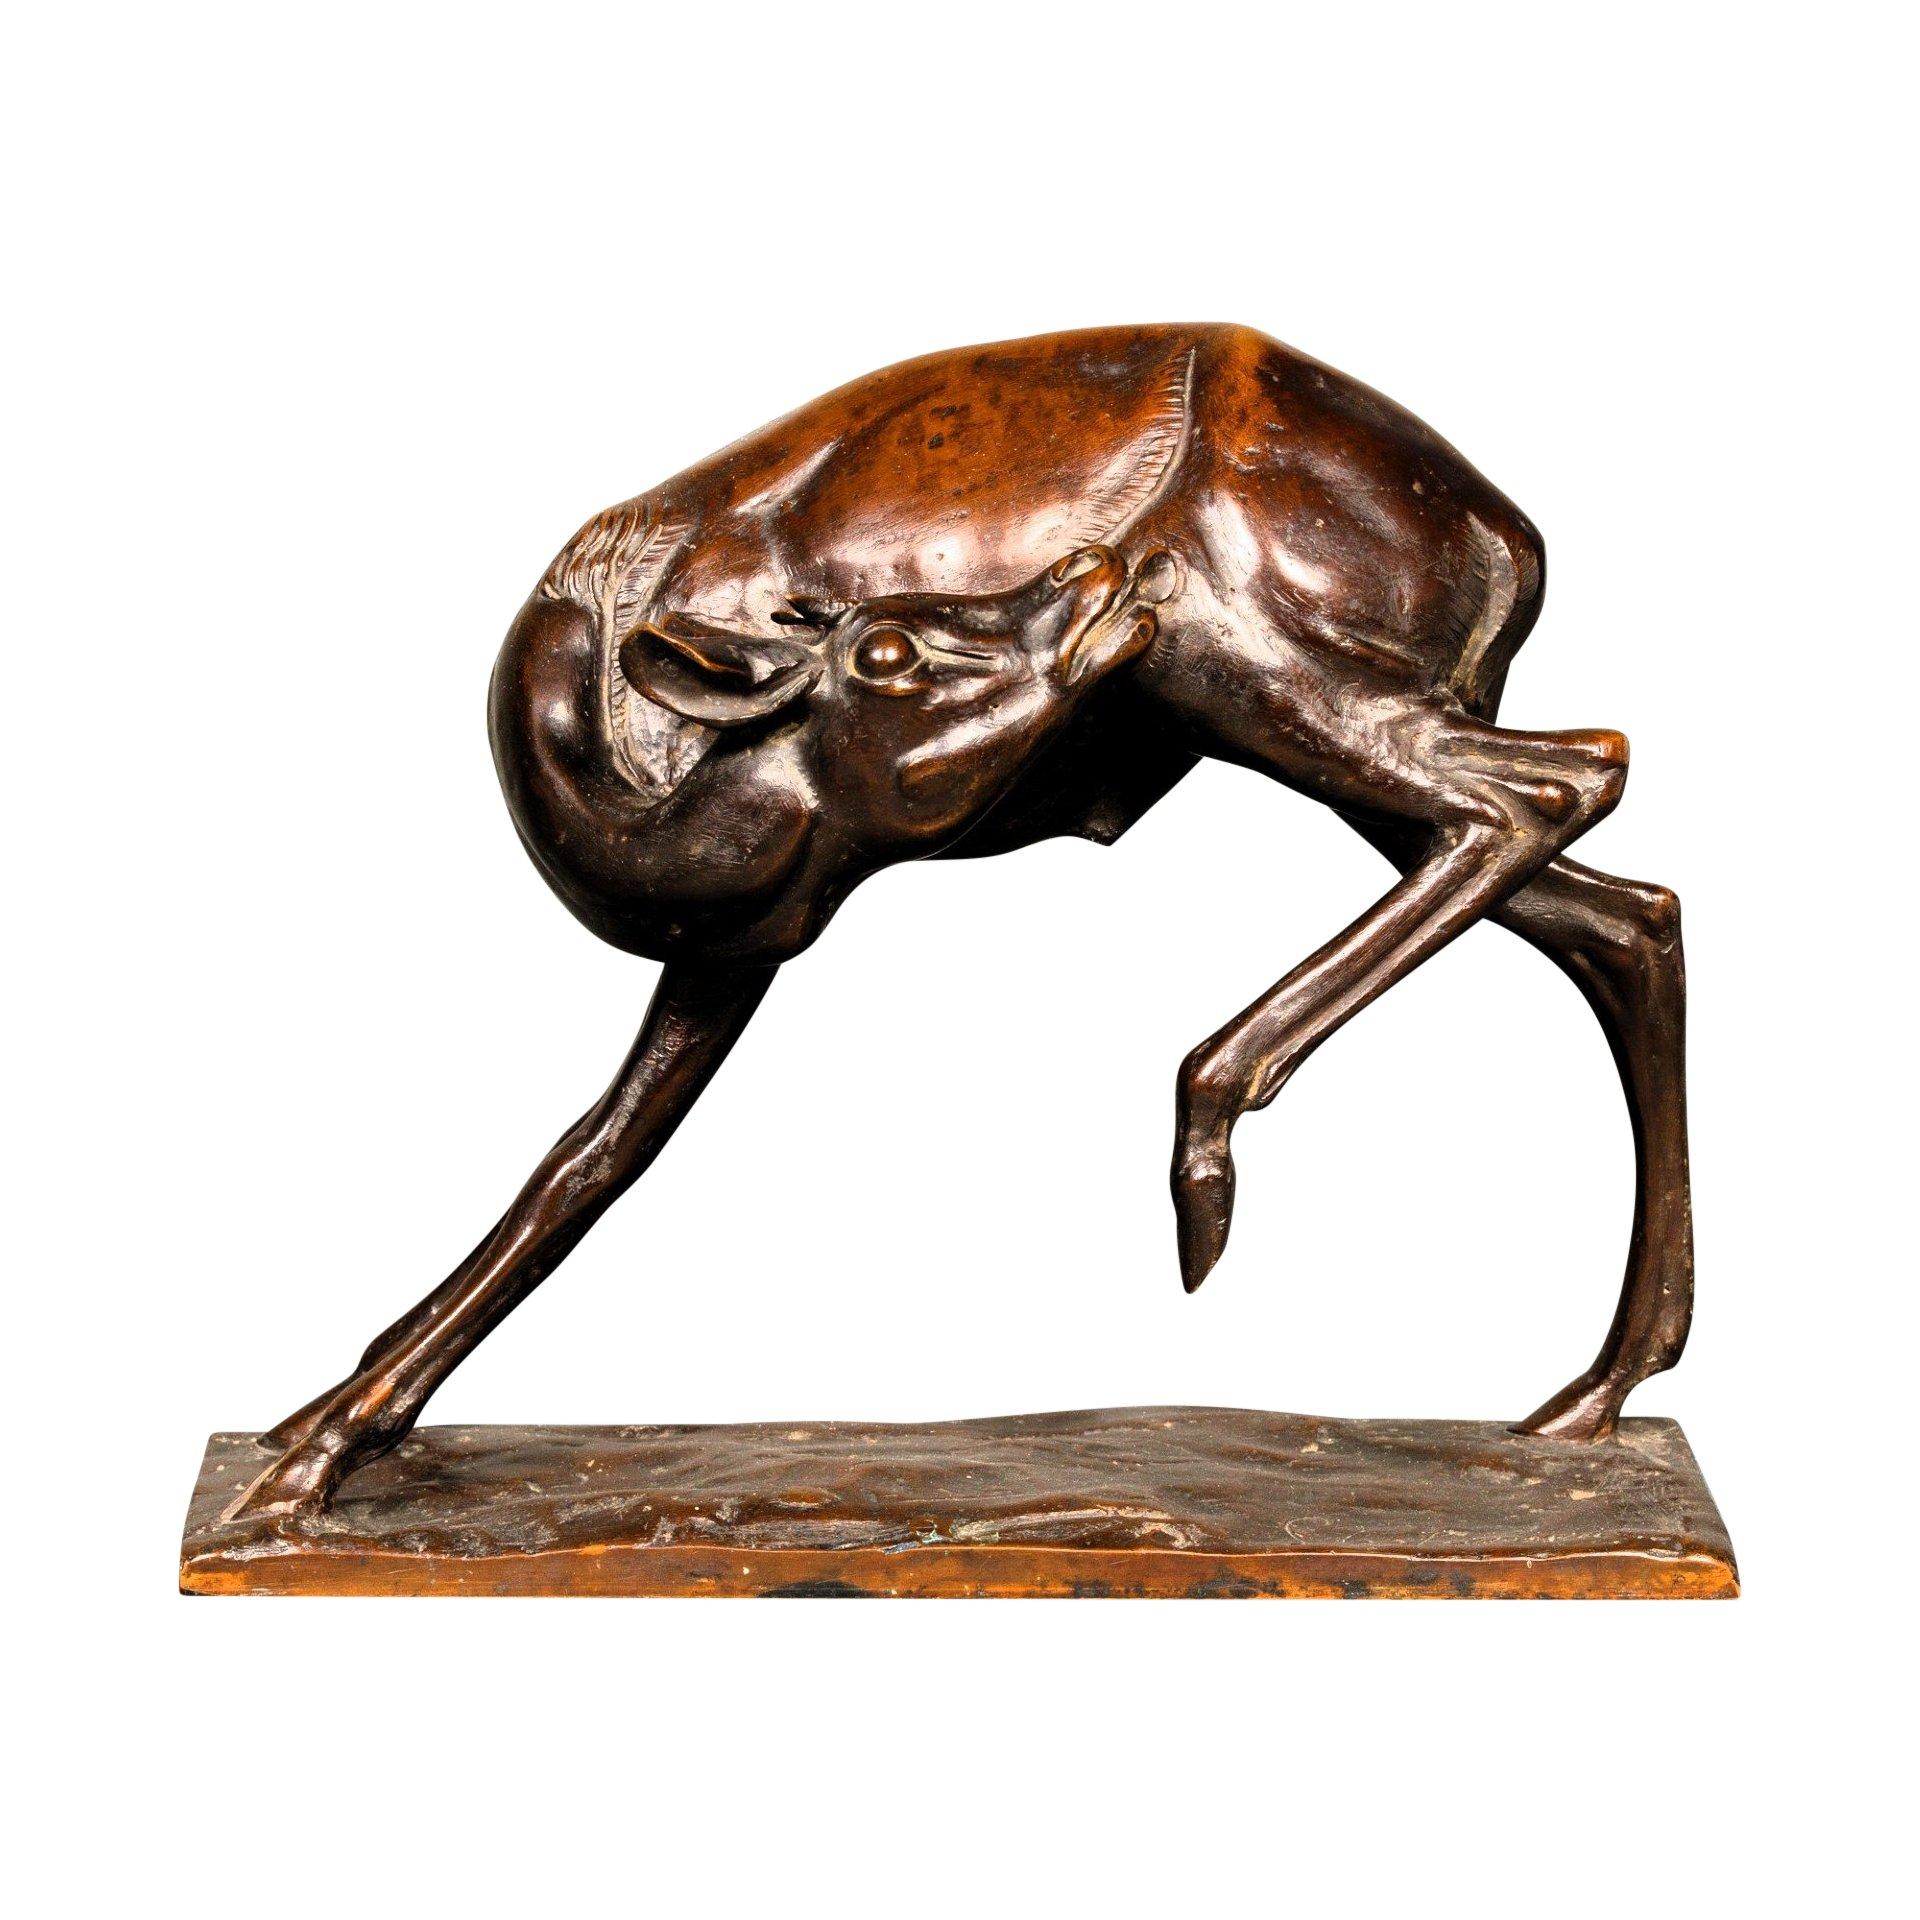 Feiner Bronzeguss einer jungen Antilope oder eines männlichen Hirsches, der sich den Rücken leckt, von Sirio Tofanari (1886-1969). Ein altes Modell mit abgebauter dunkelbrauner Patina und helleren Brauntönen. Signiert Sirio Tofanari auf dem